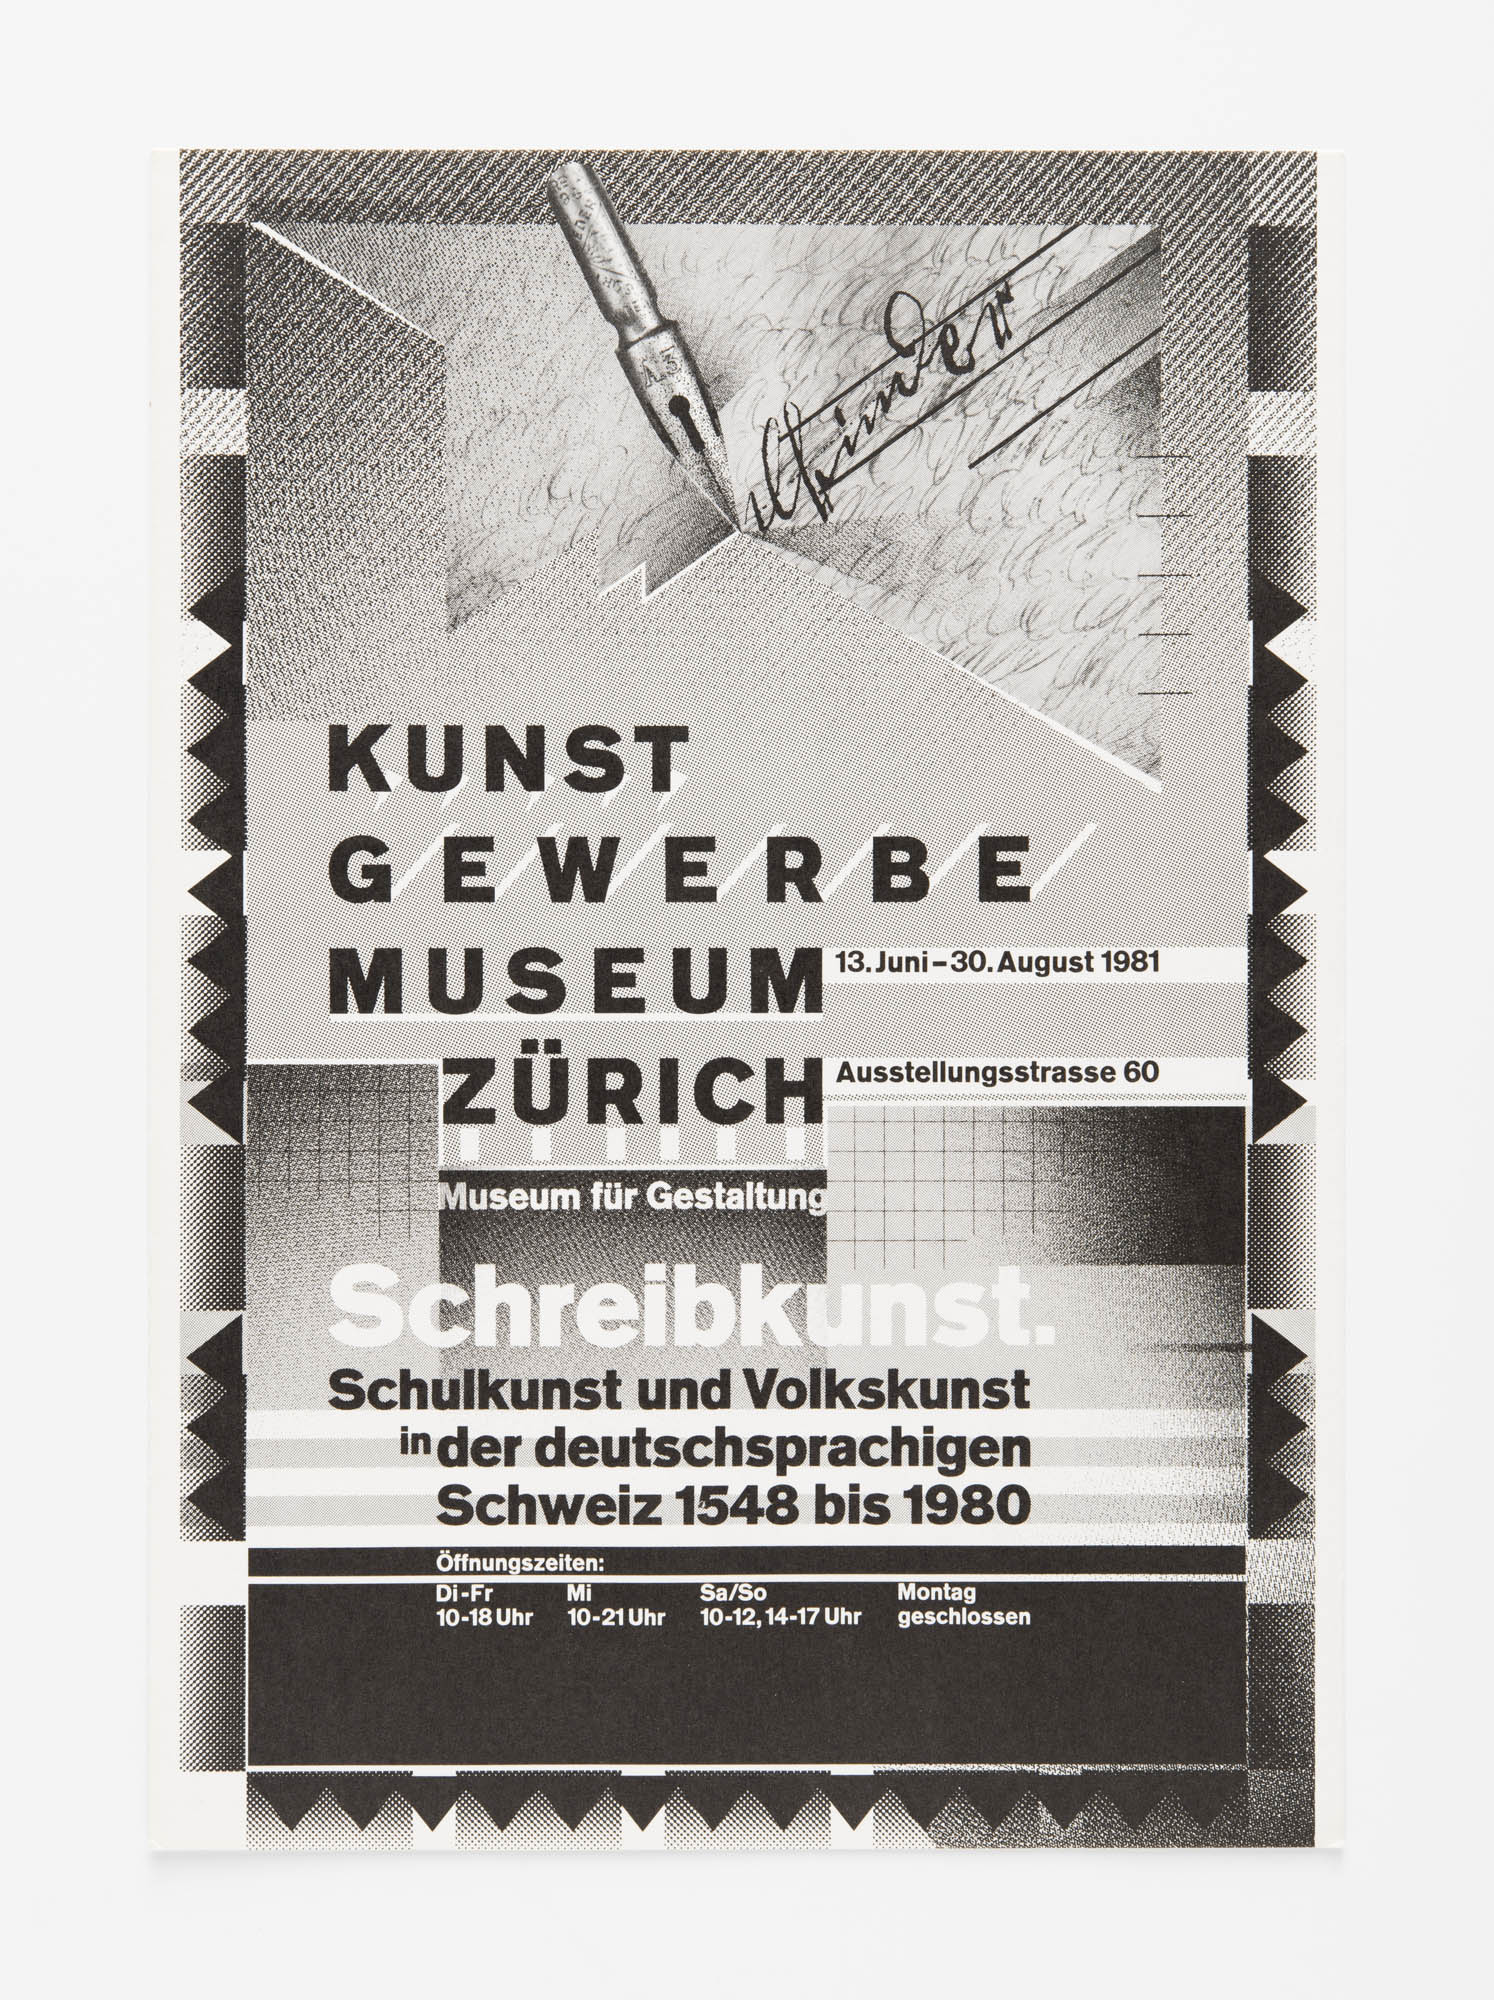 Kunstgewerbemuseum Zürich – Schreibkunst Wolfgang Weingart Poster design